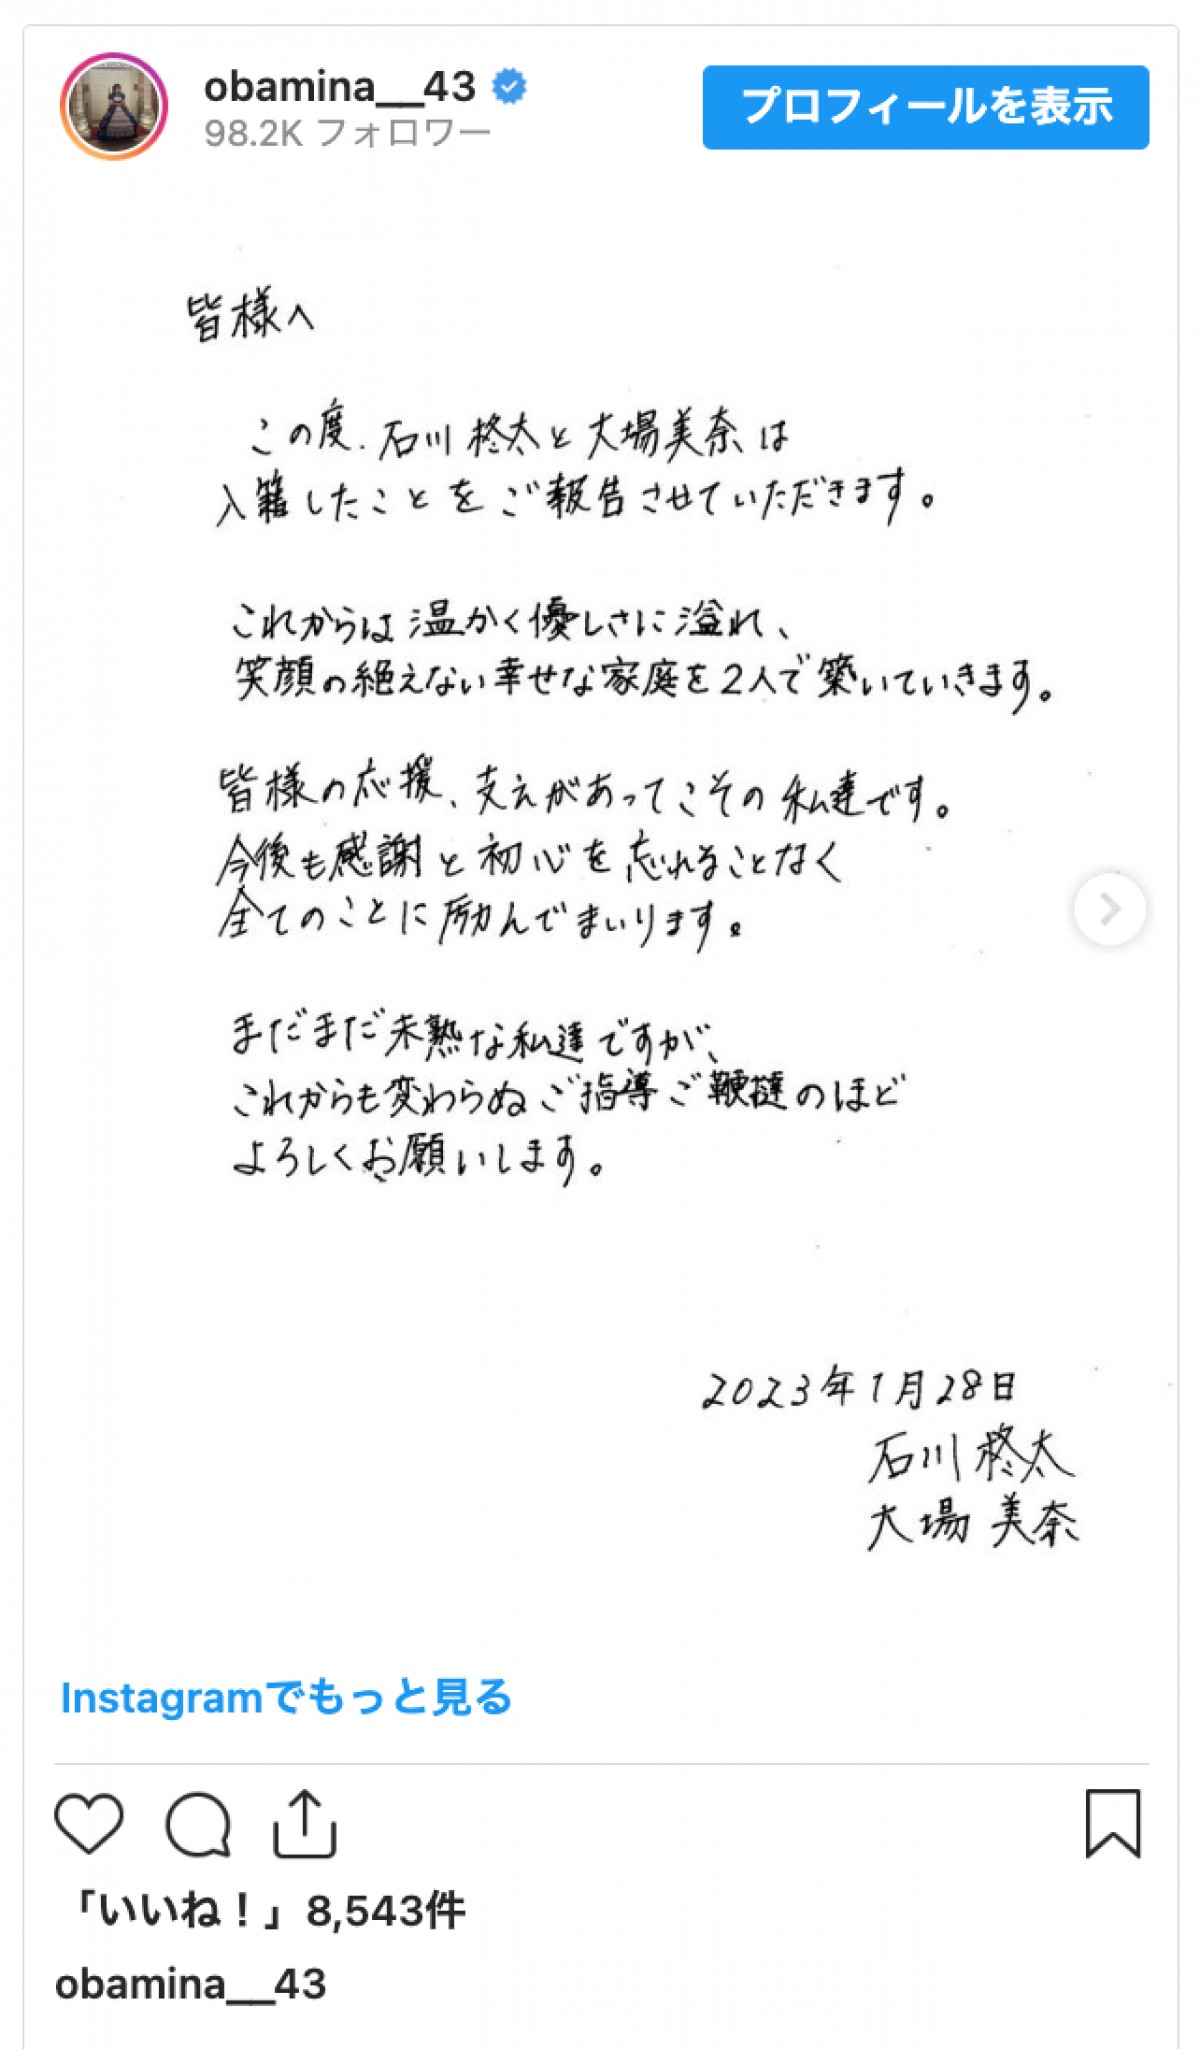 元SKE48・大場美奈、ソフトバンク・石川柊太と結婚「笑顔の絶えない幸せな家庭を」